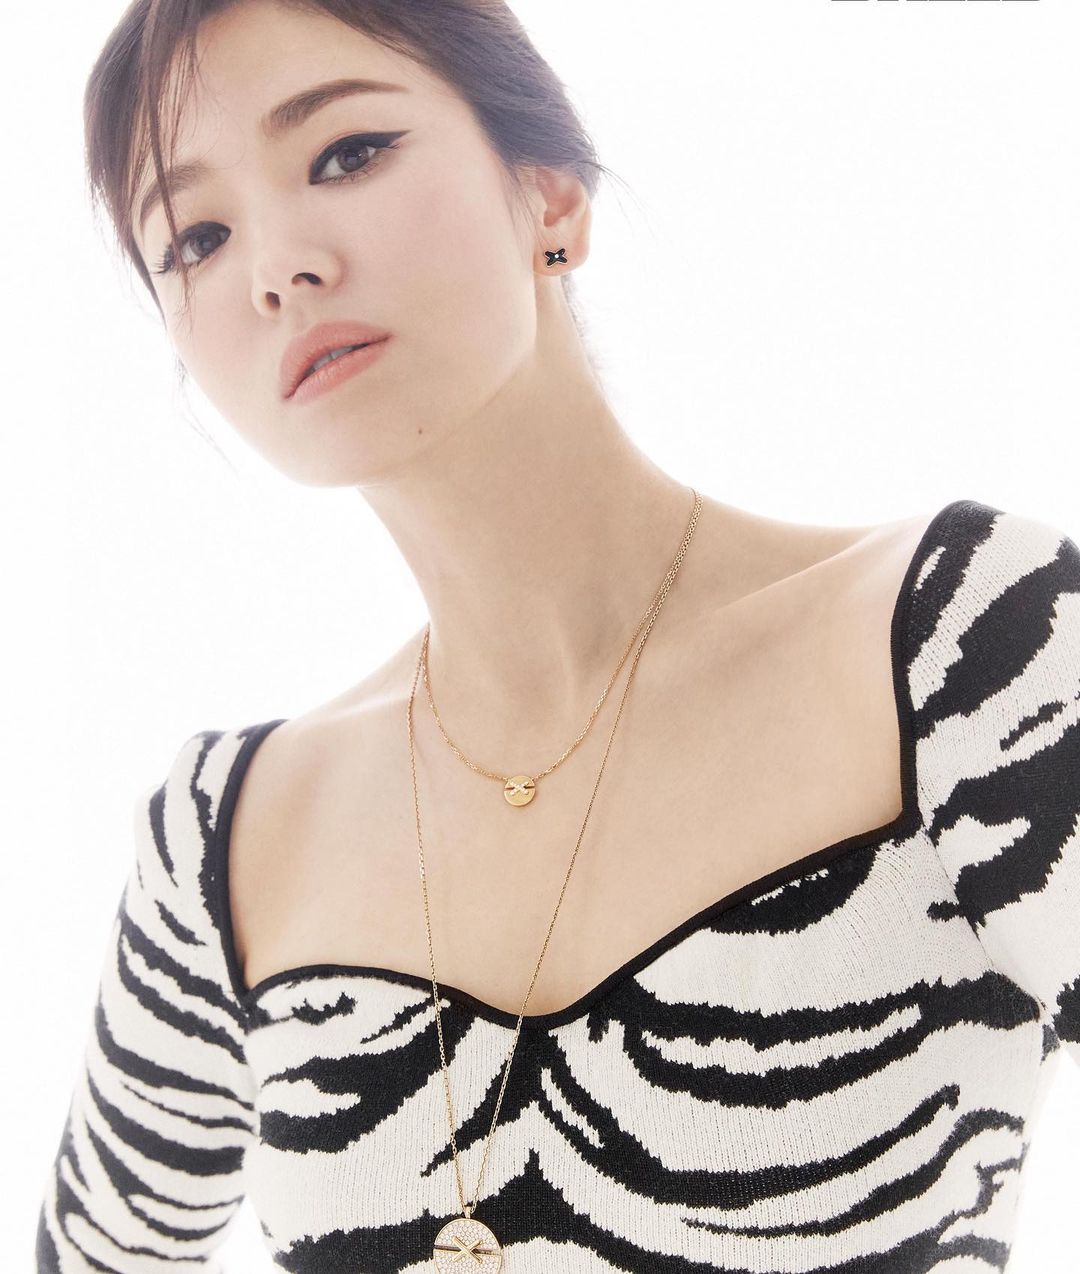 Thời gian gần đây, Song Hye Kyo hướng tới hình ảnh sang trọng, lạnh lùng hơn xưa. Từ các layout make up lẫn gu ăn mặc của của nữ diễn viên đều có sự thay đổi lớn.